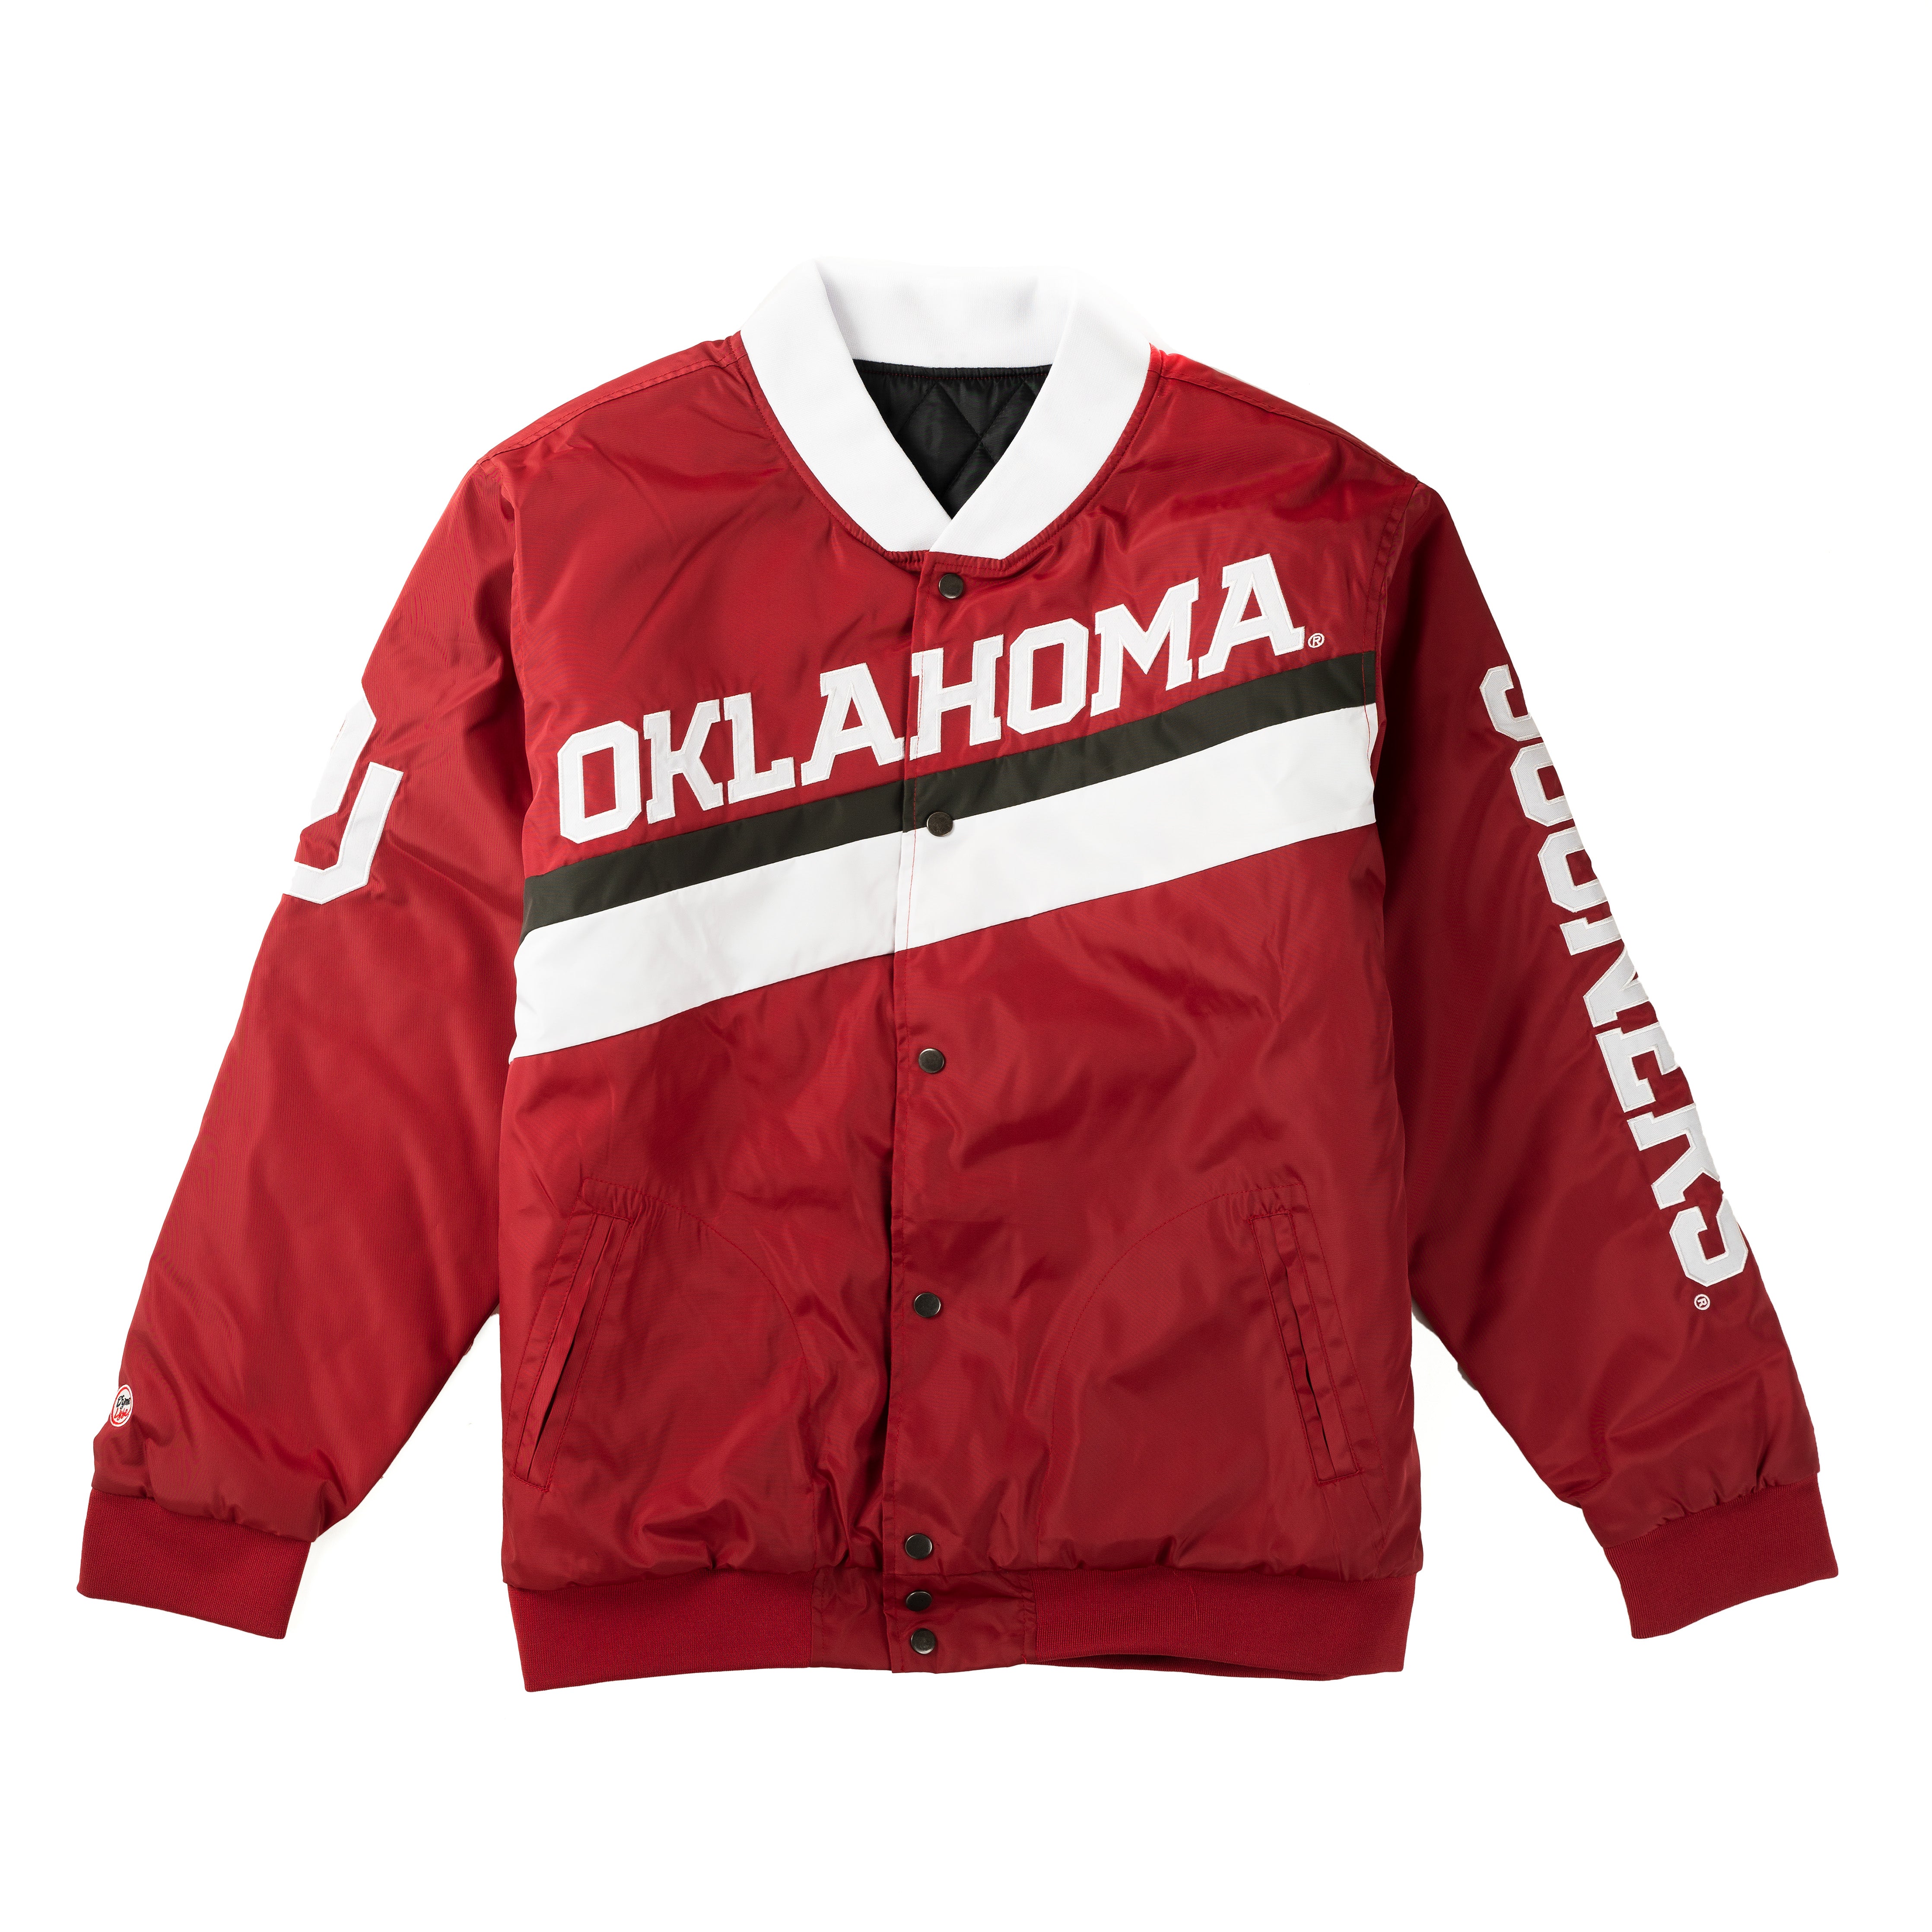 Oklahoma Sooners Men’s Championship Jacket